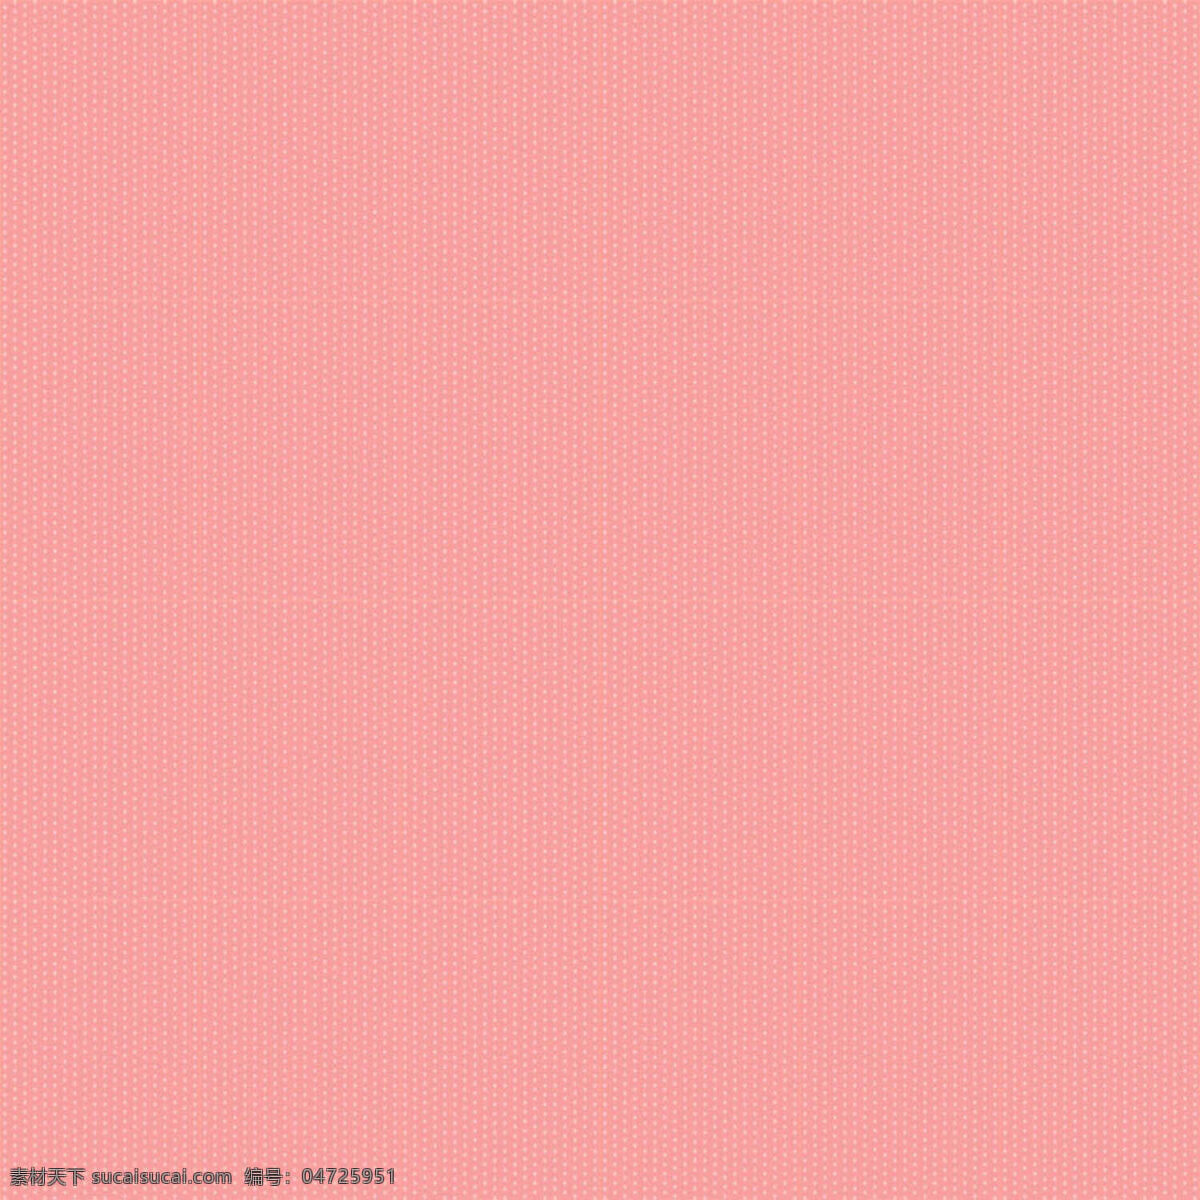 粉色 虚 点 背景 彩色 线条 黑白线条素材 简约 边框 模糊背景素材 清新 模糊 背景图片